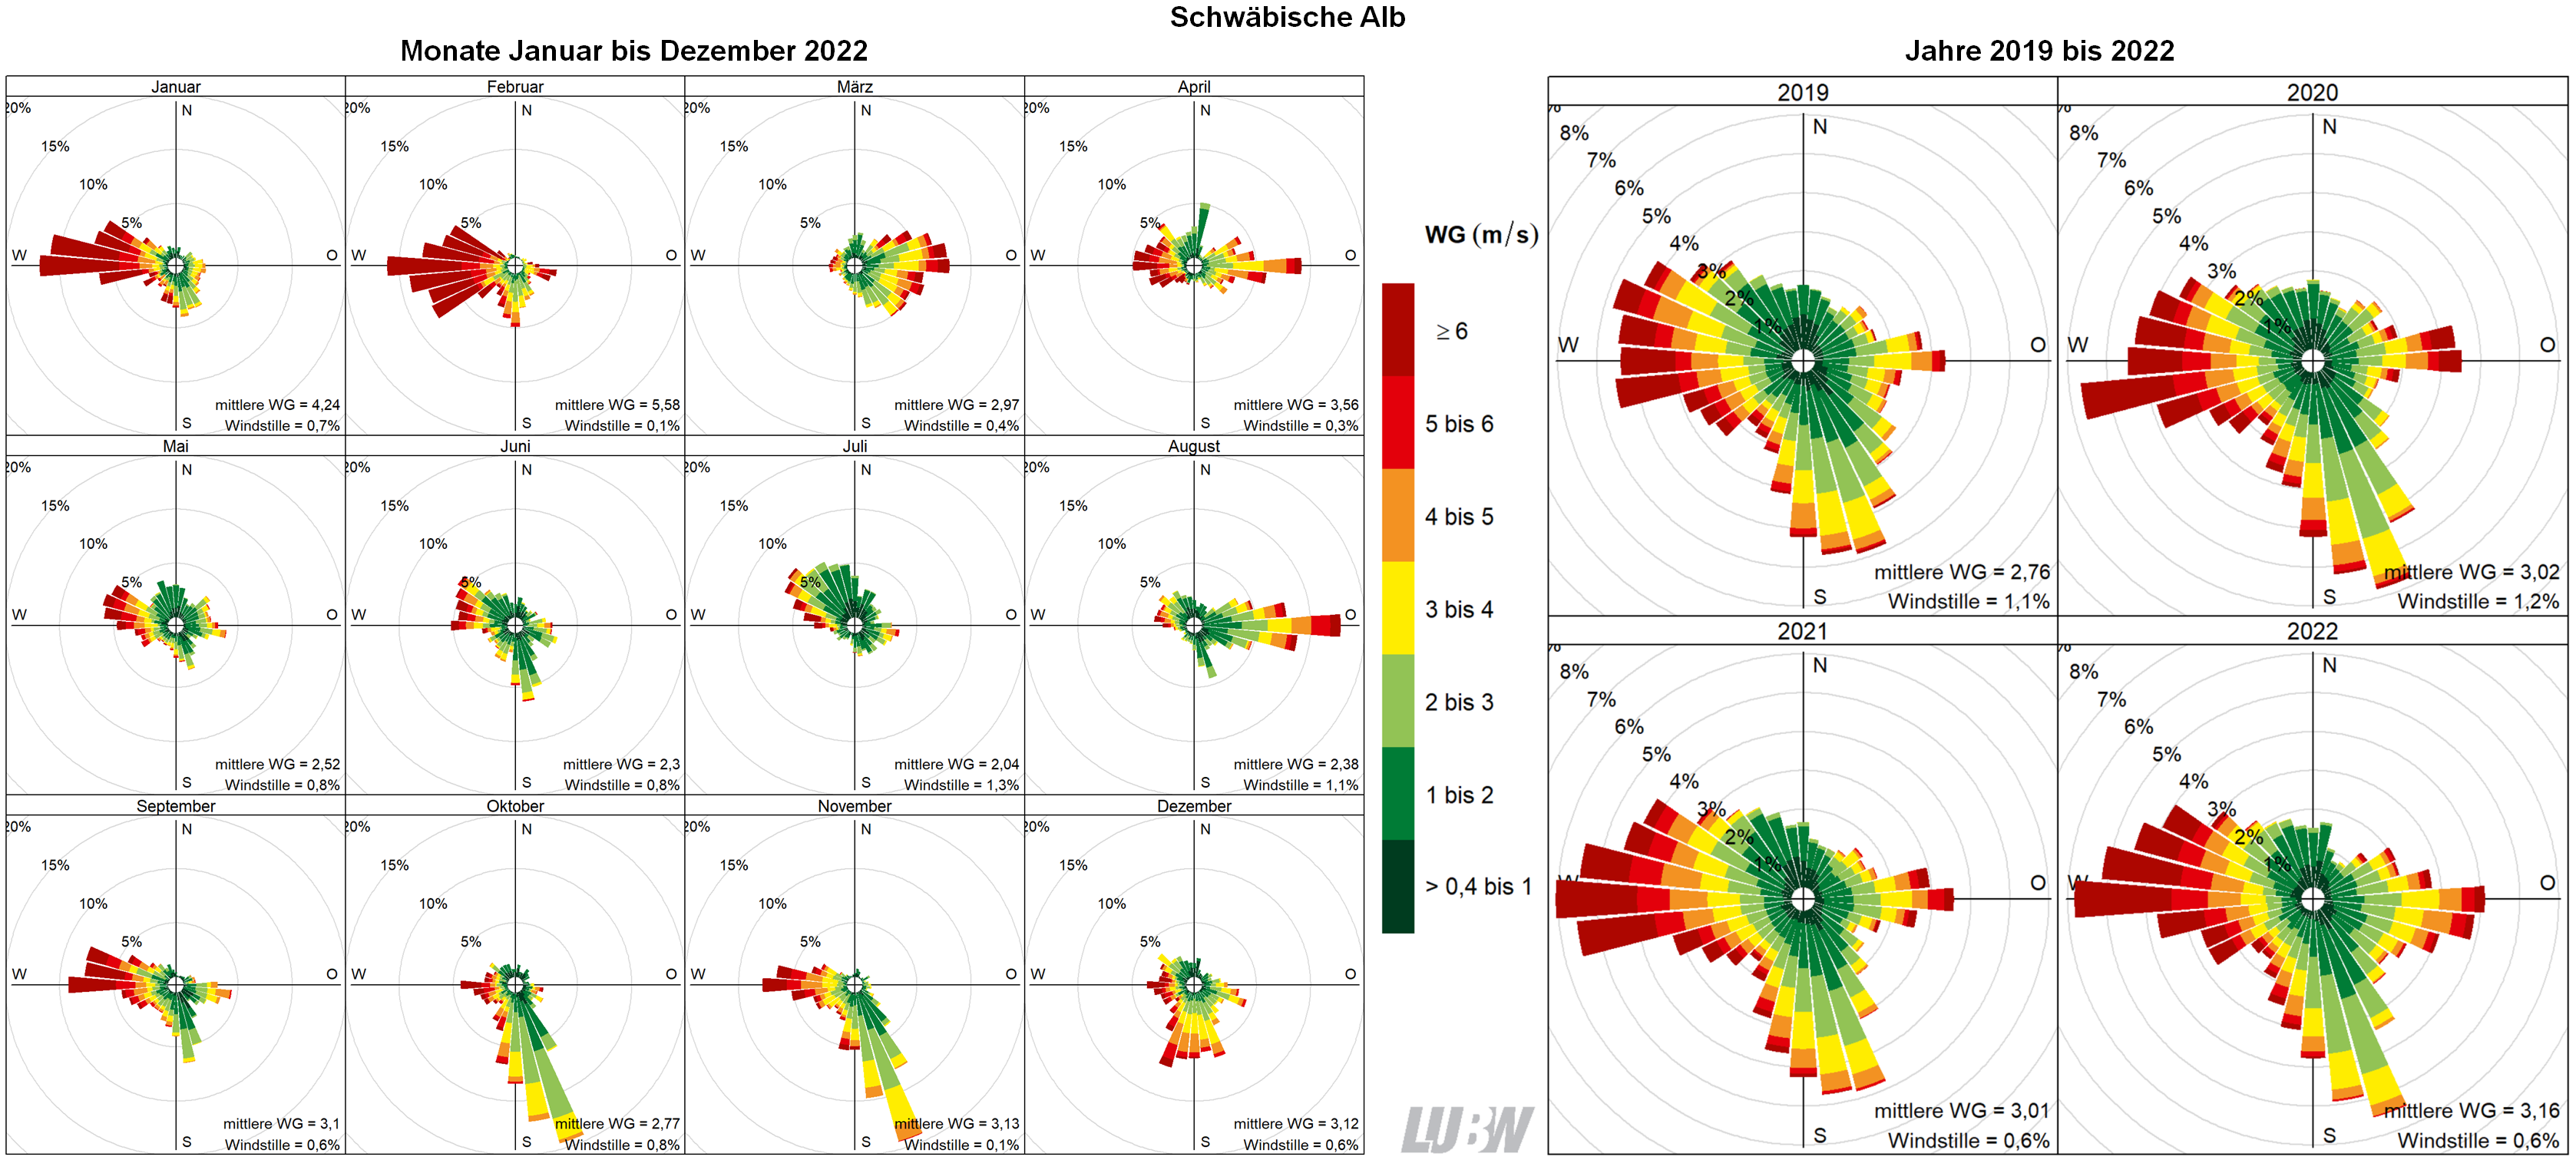  Mitttlere Windverteilung als Windrosen für die Monate Januar bis Dezember 2022 (linke Abbildung) sowie für die Jahre 2019 bis 2022 (rechte Abbildung) für den Standort Schwäbische Alb. Weitere Informationen im umliegenden Text. 